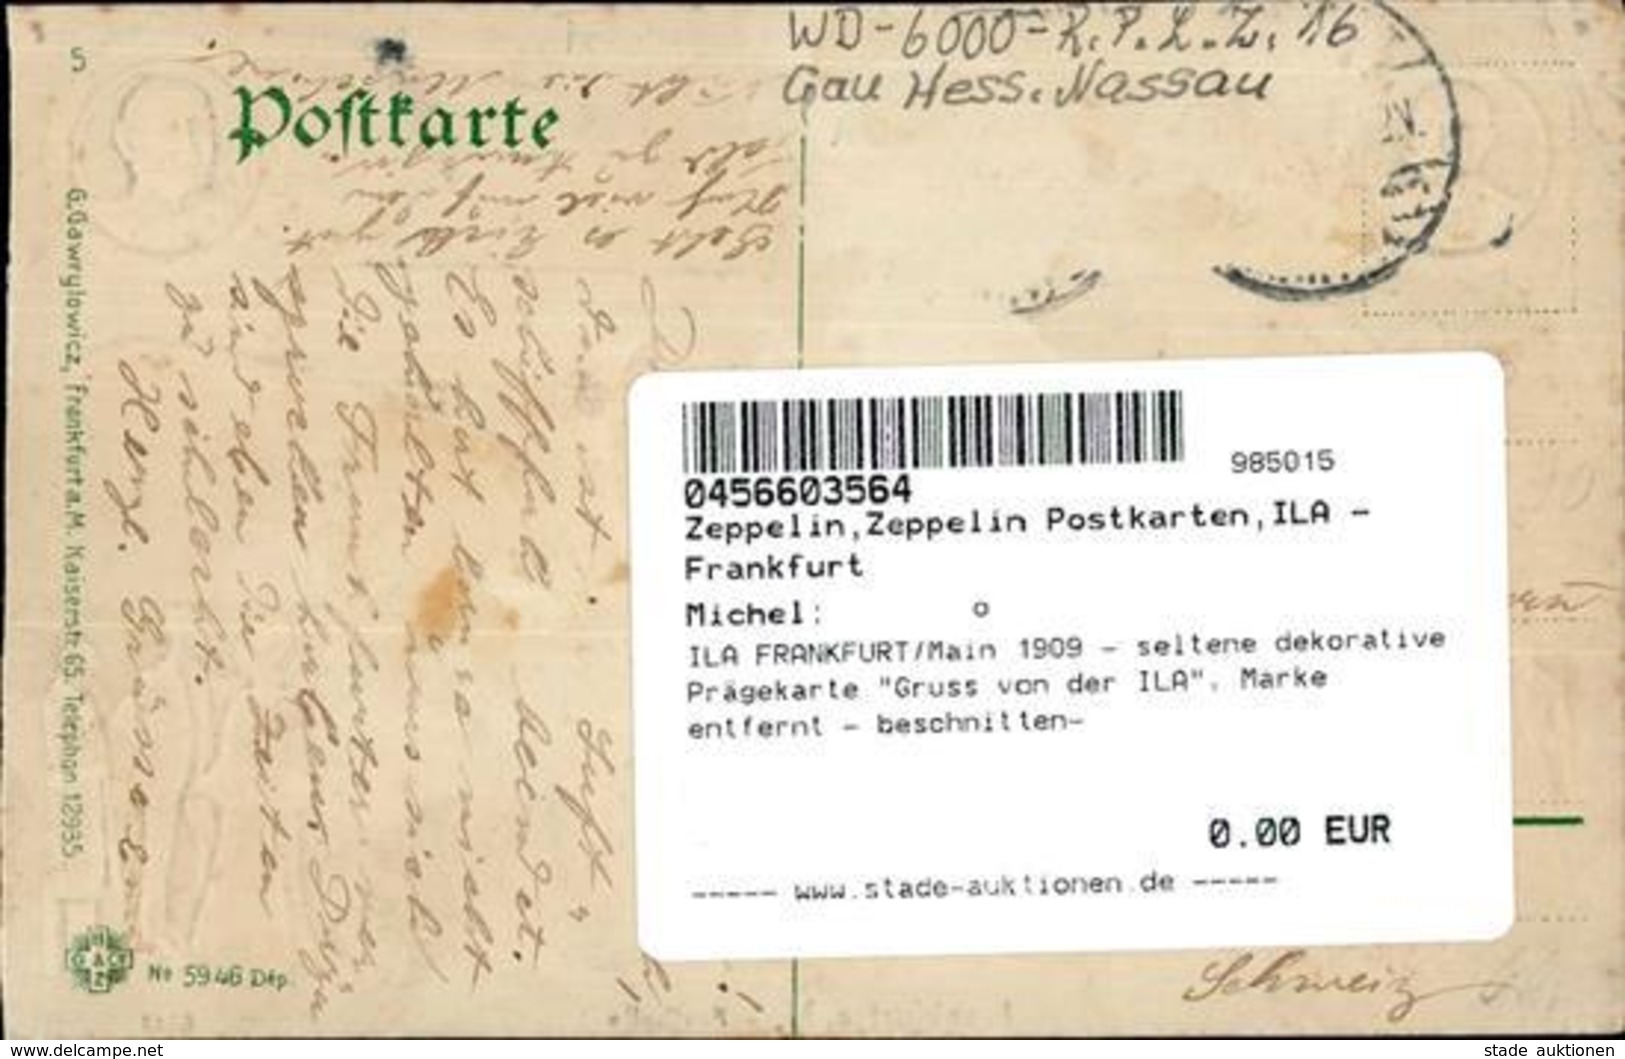 ILA FRANKFURT/Main 1909 - Seltene Dekorative Prägekarte Gruss Von Der ILA", Marke Entfernt - Beschnitten-" Montagnes - Zeppeline